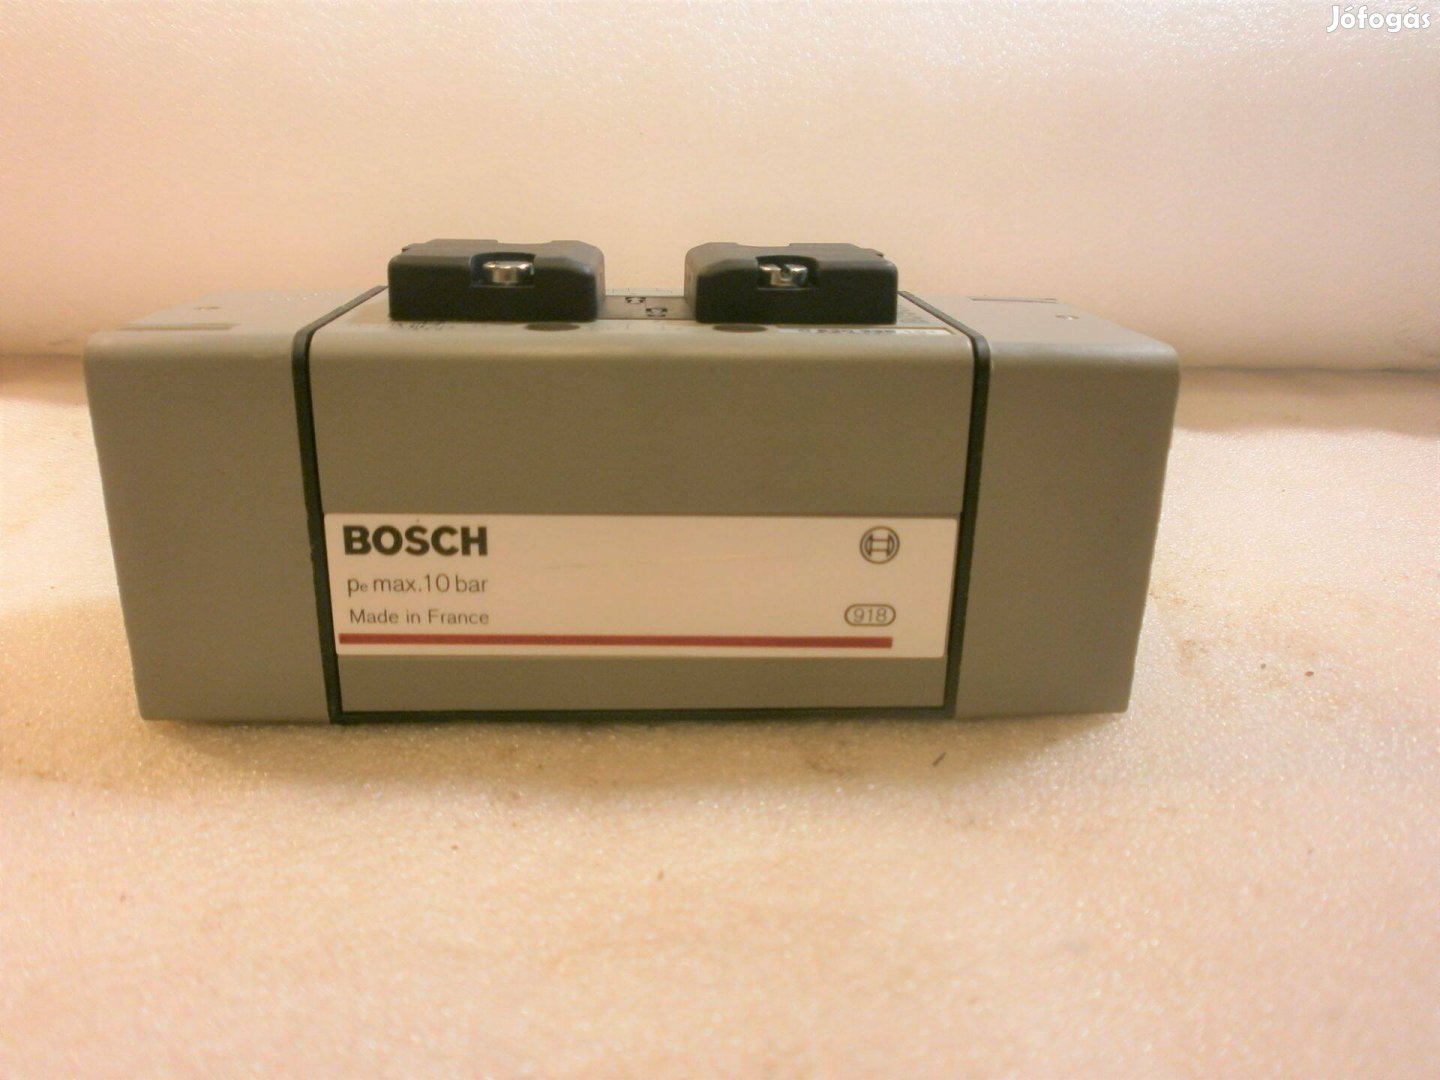 Pneumatikus mágnesszelep Bosch ( 3568 )